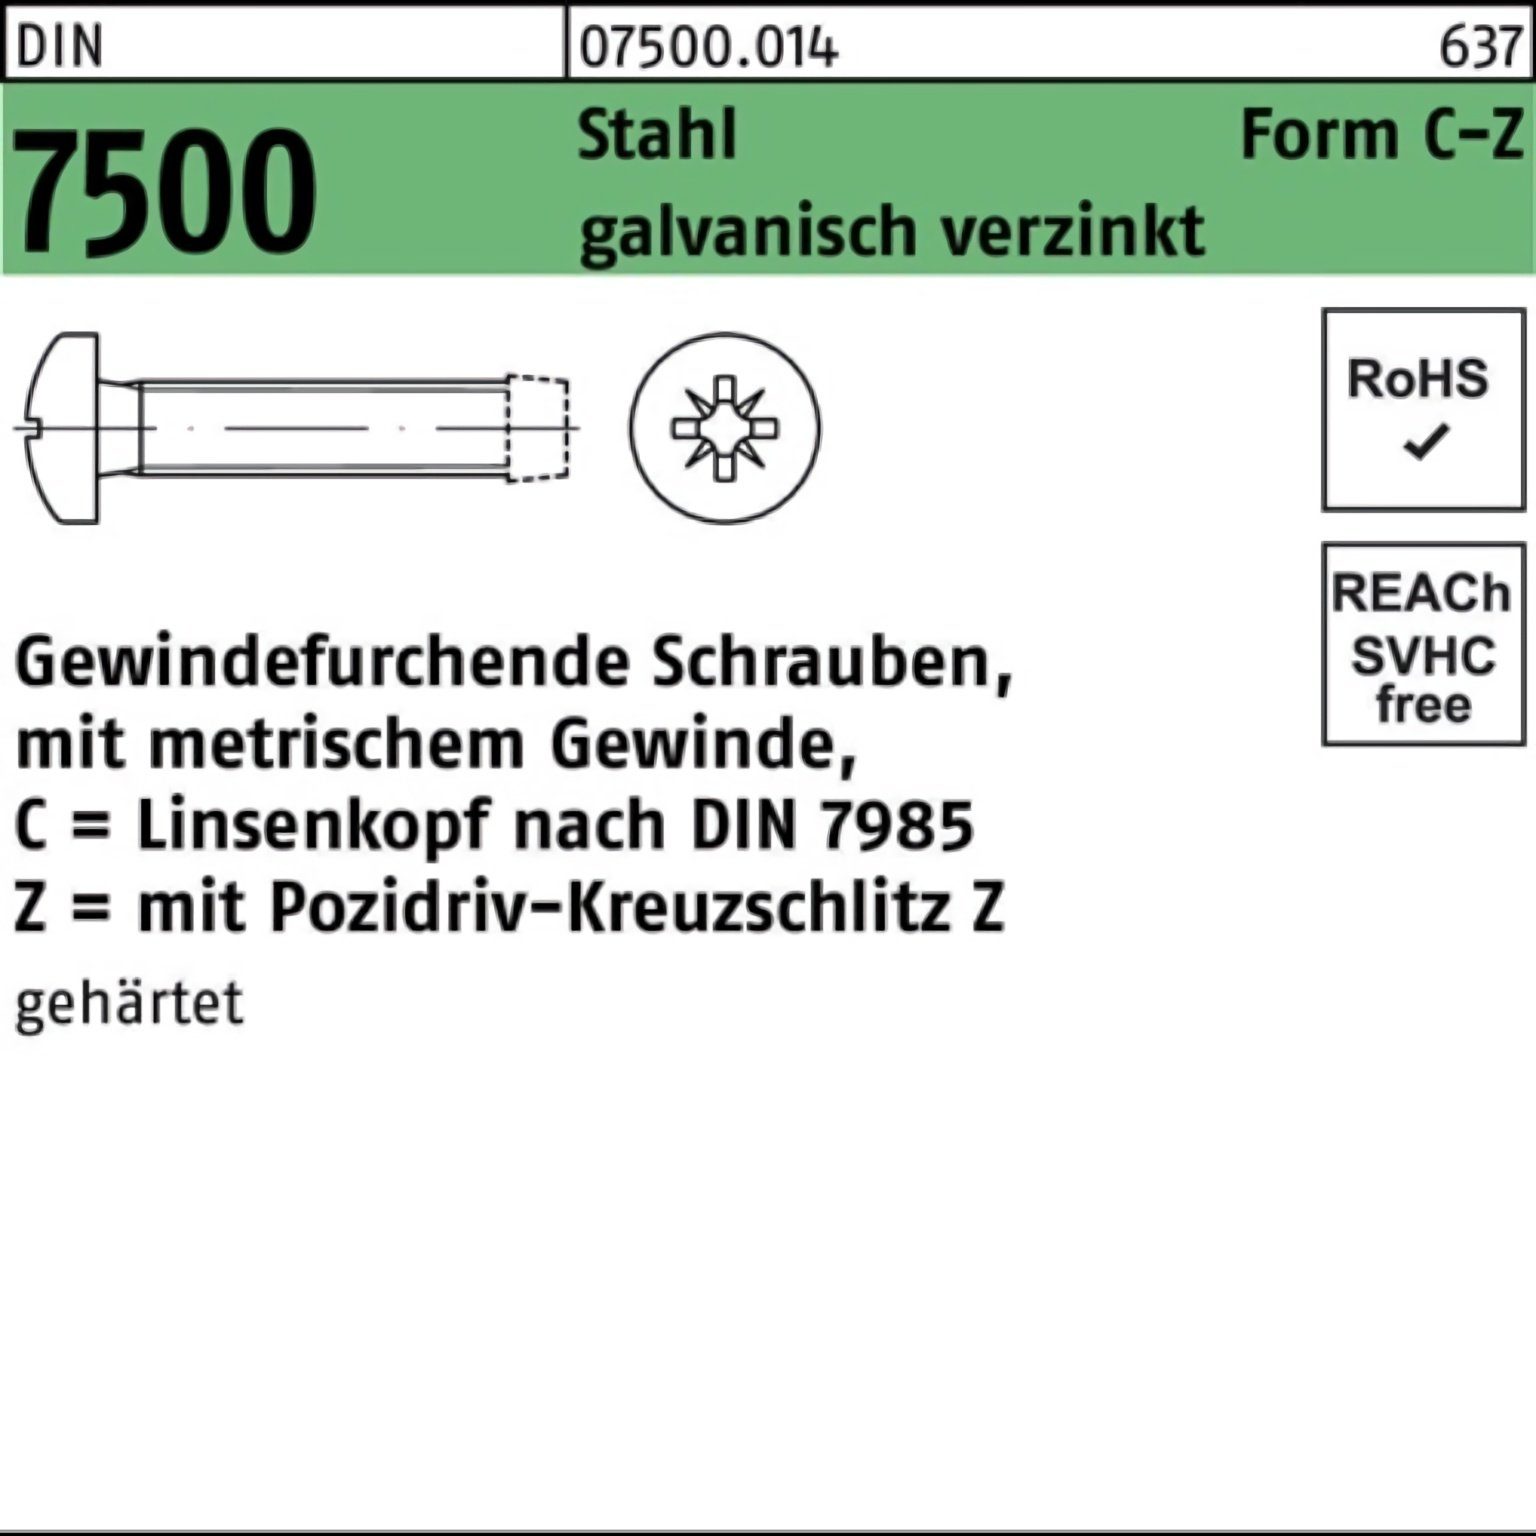 Pack CM LIKO PZ 2000er Gewindefurchendeschraube 3x6-Z g 7500 DIN Gewindeschraube Reyher Stahl